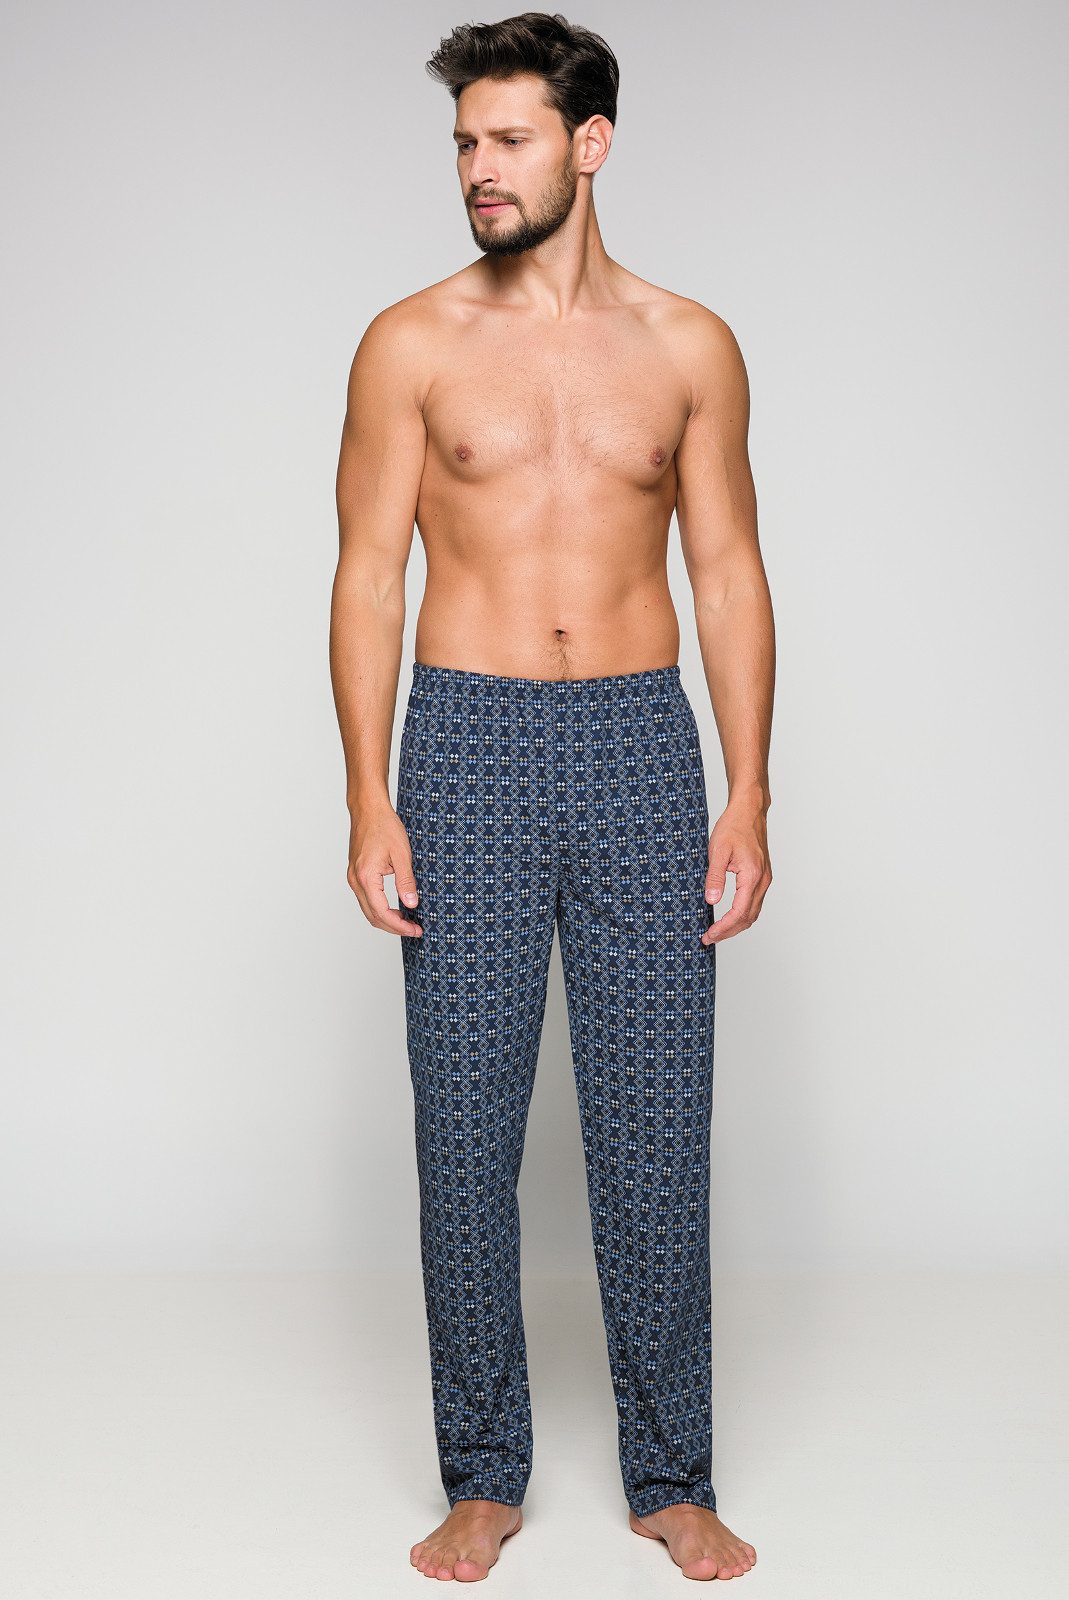 Pánské pyžamové kalhoty Regina 721 MIX XXL